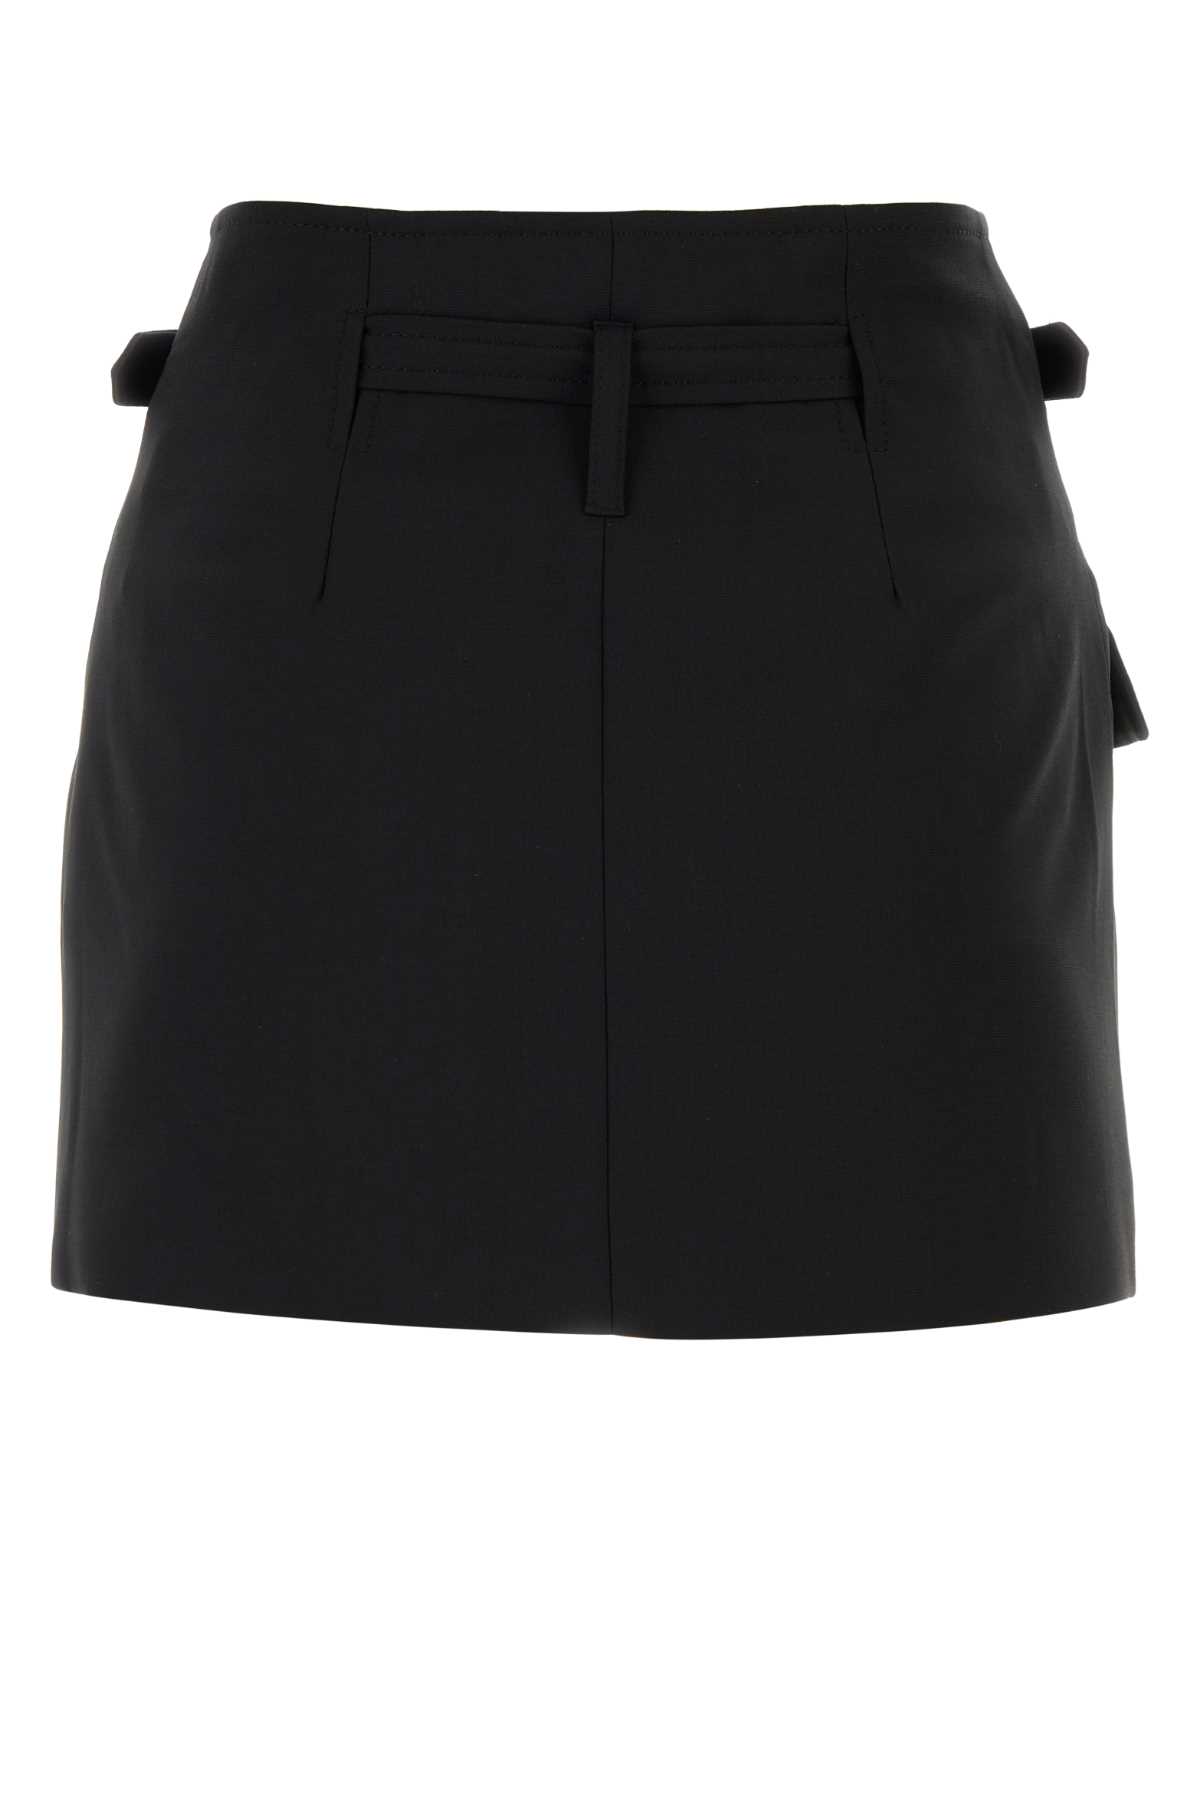 Shop Dion Lee Black Stretch Polyester Blend Mini Skirt